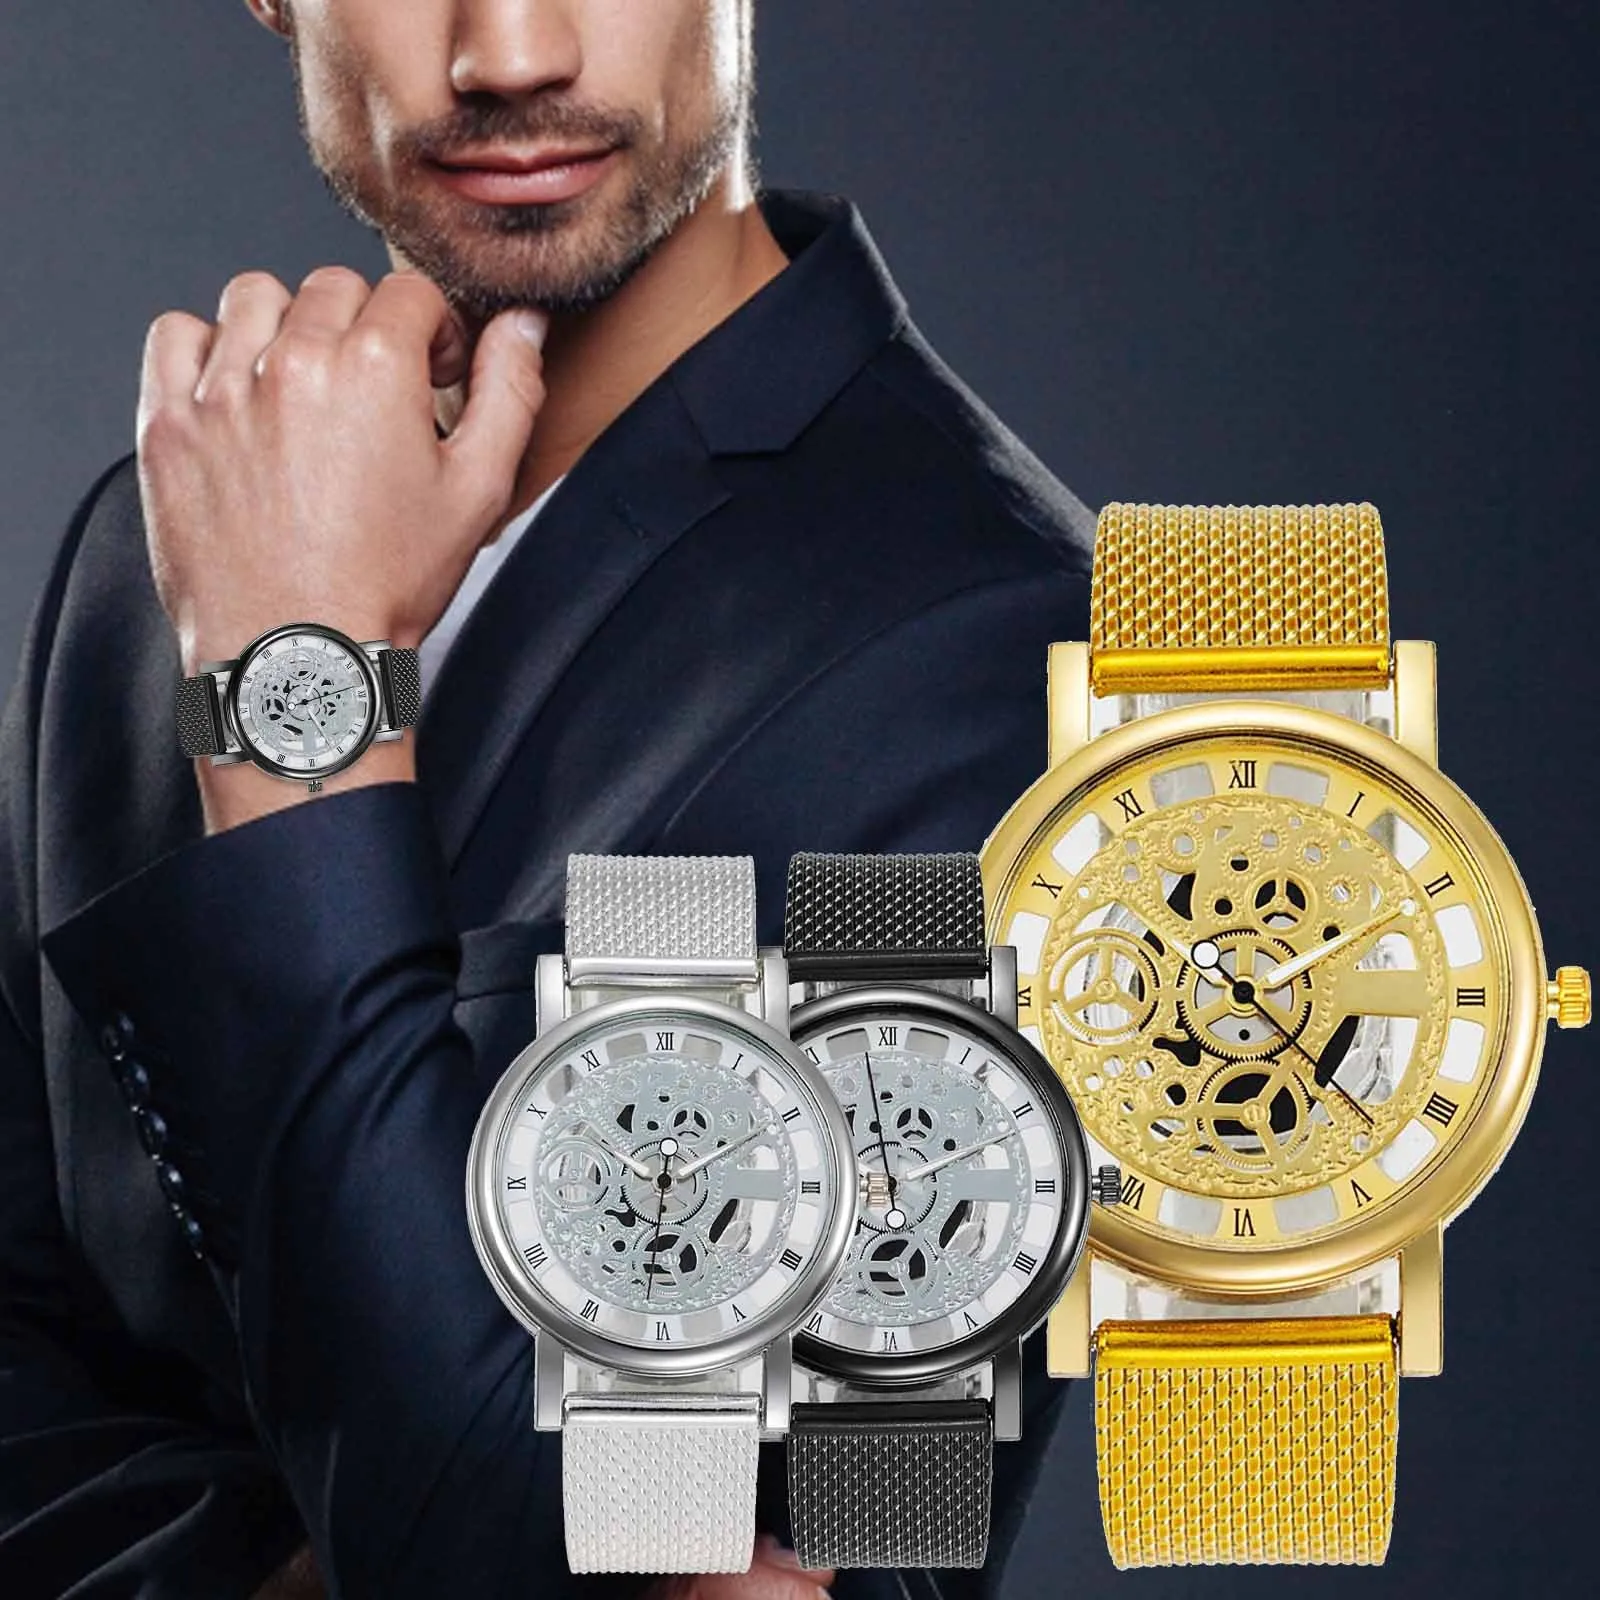 Luxry Brand Hollow incisione orologio da polso per uomo scheletro orologio maschile Saat Quartz Business Fashion orologio con cinturino in pelle Curren